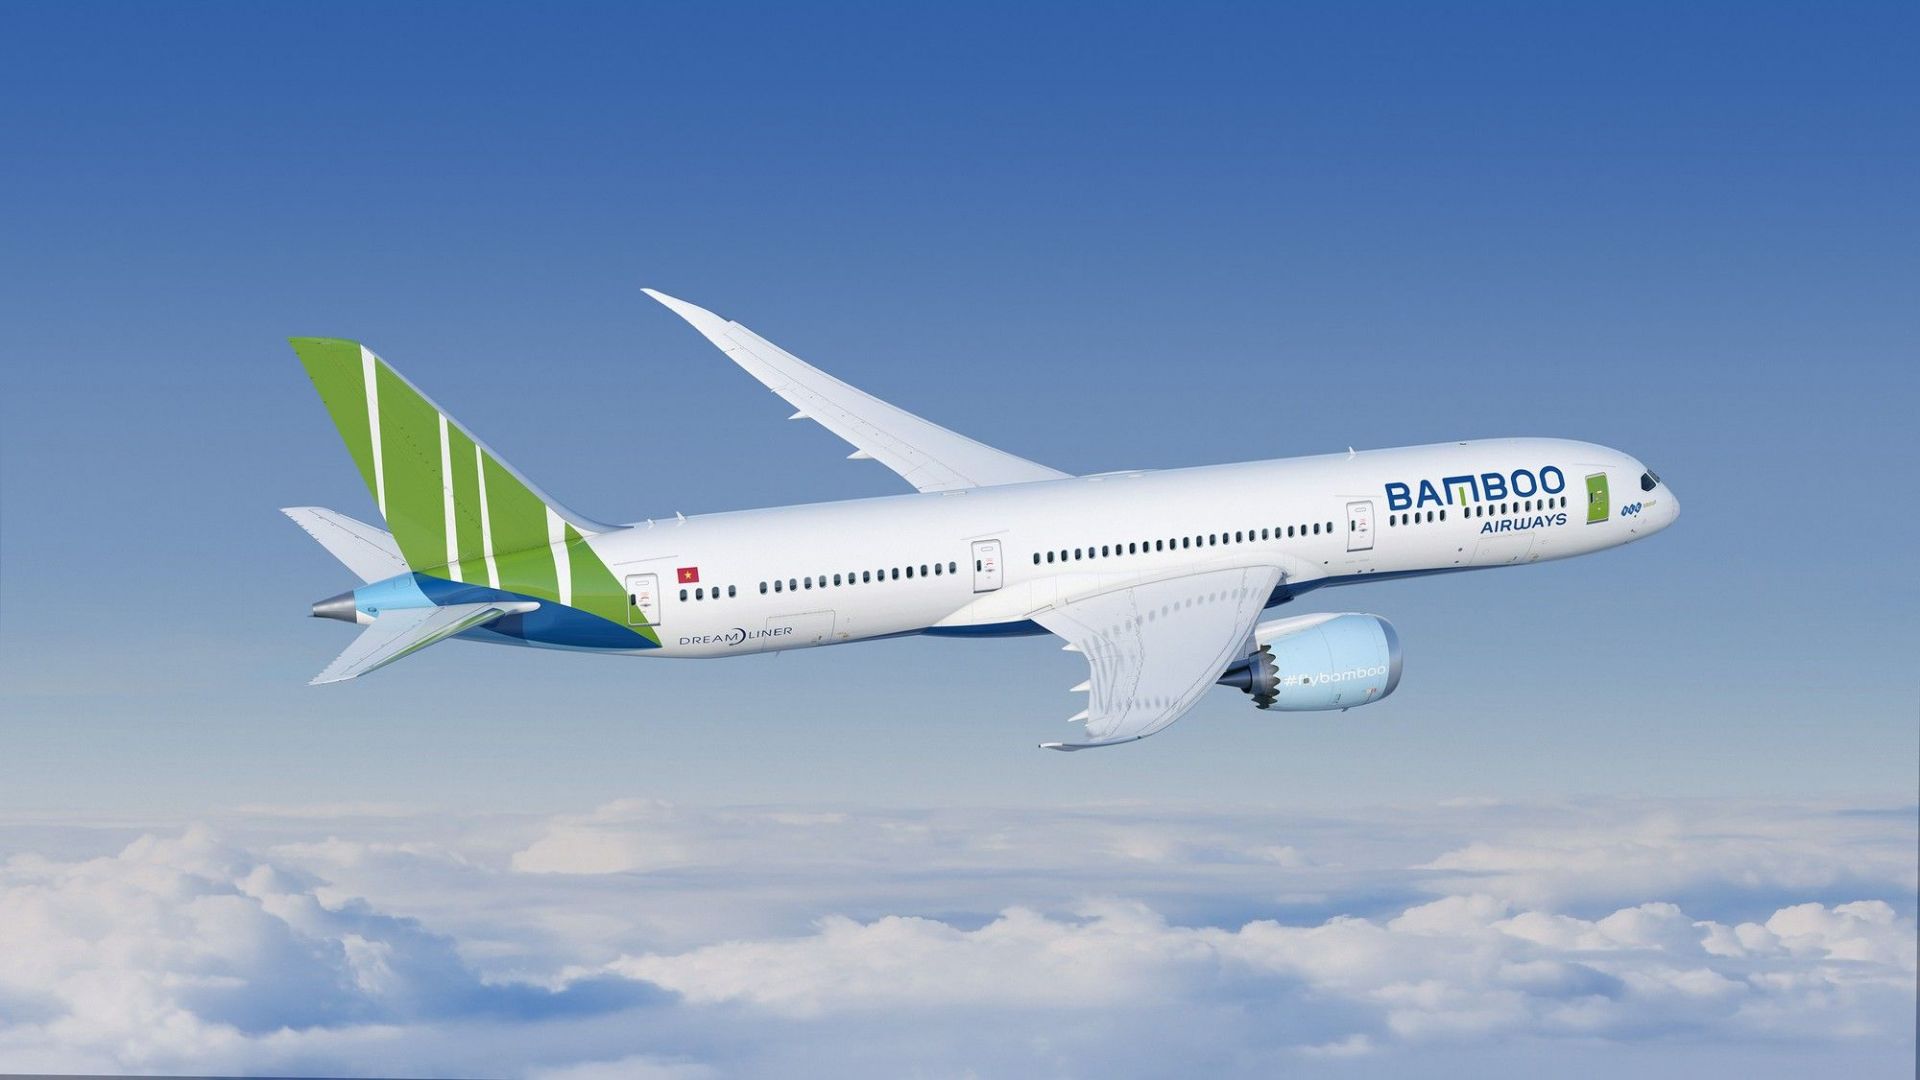 Bamboo Airways muốn huy động 10.000 tỷ từ cổ đông để cơ cấu nợ và tăng vốn                                    